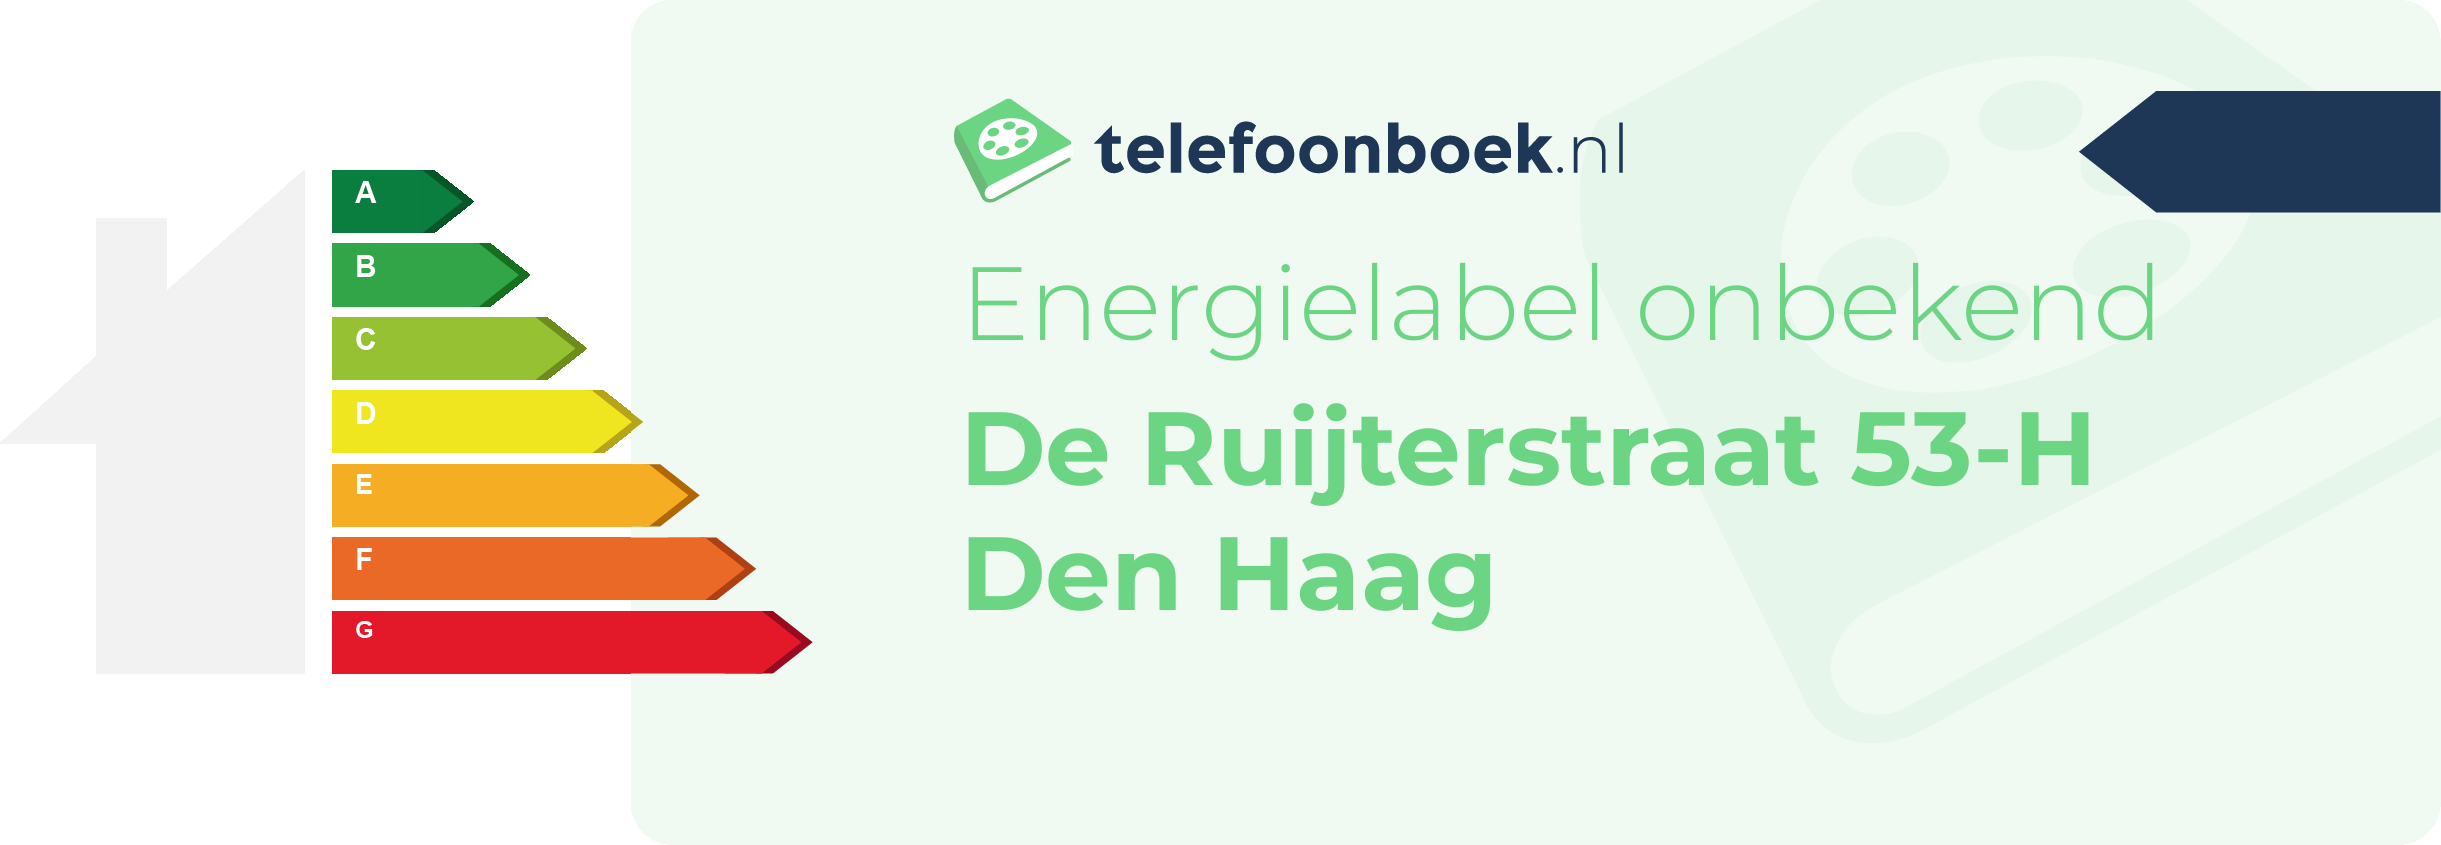 Energielabel De Ruijterstraat 53-H Den Haag